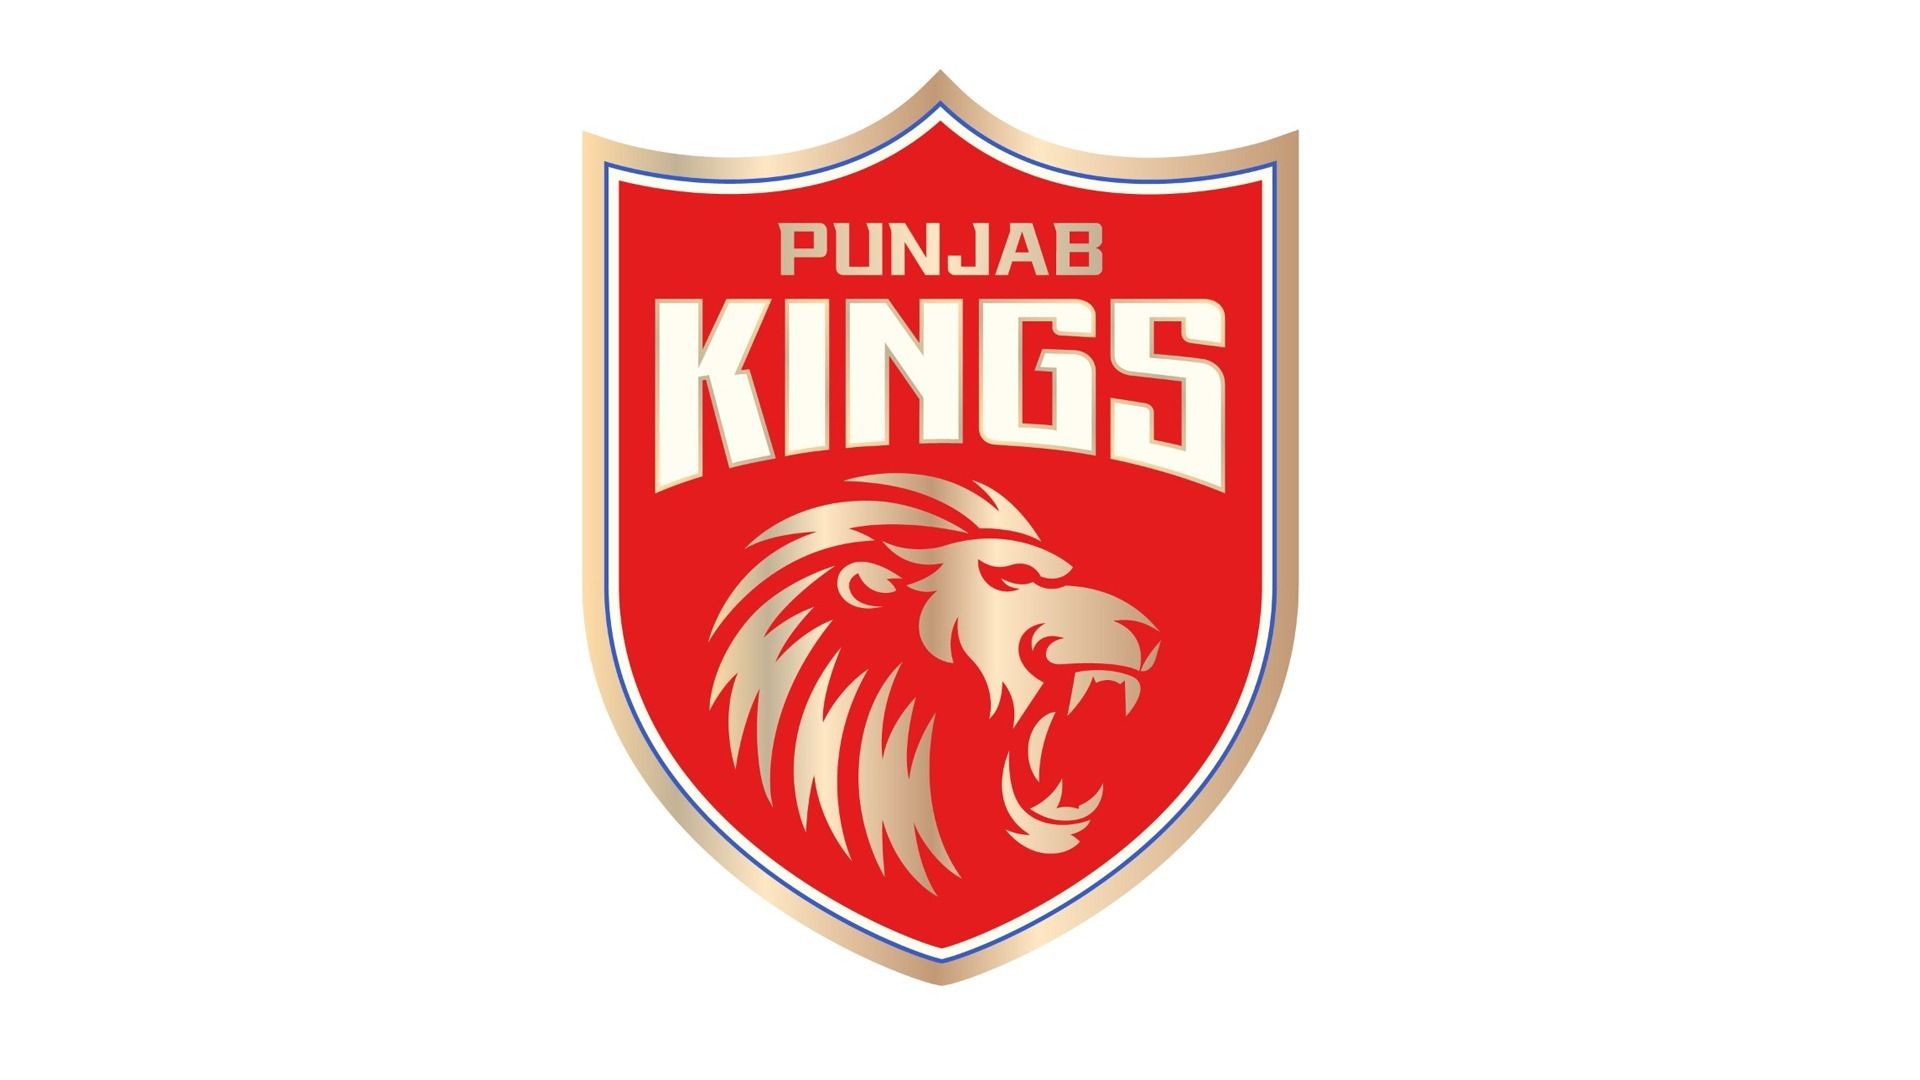 Kings XI Punjab is now 'Punjab Kings'